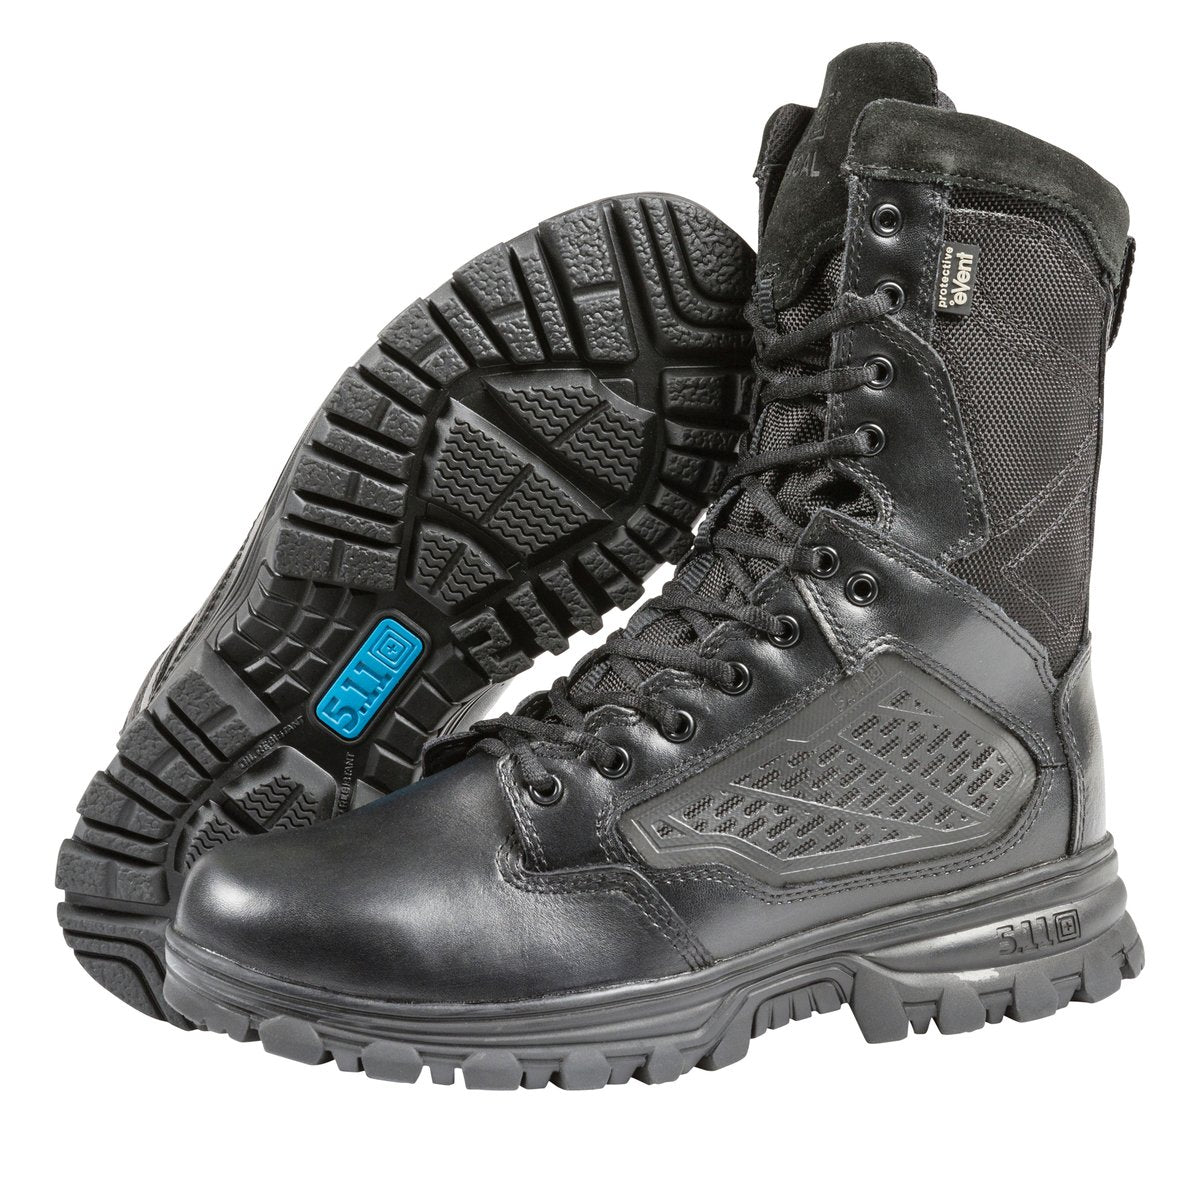 5.11 Tactical EVO Side-Zip Waterproof 8 Inch Boots 12312 Footwear 5.11 Tactical Tactical Gear Supplier Tactical Distributors Australia